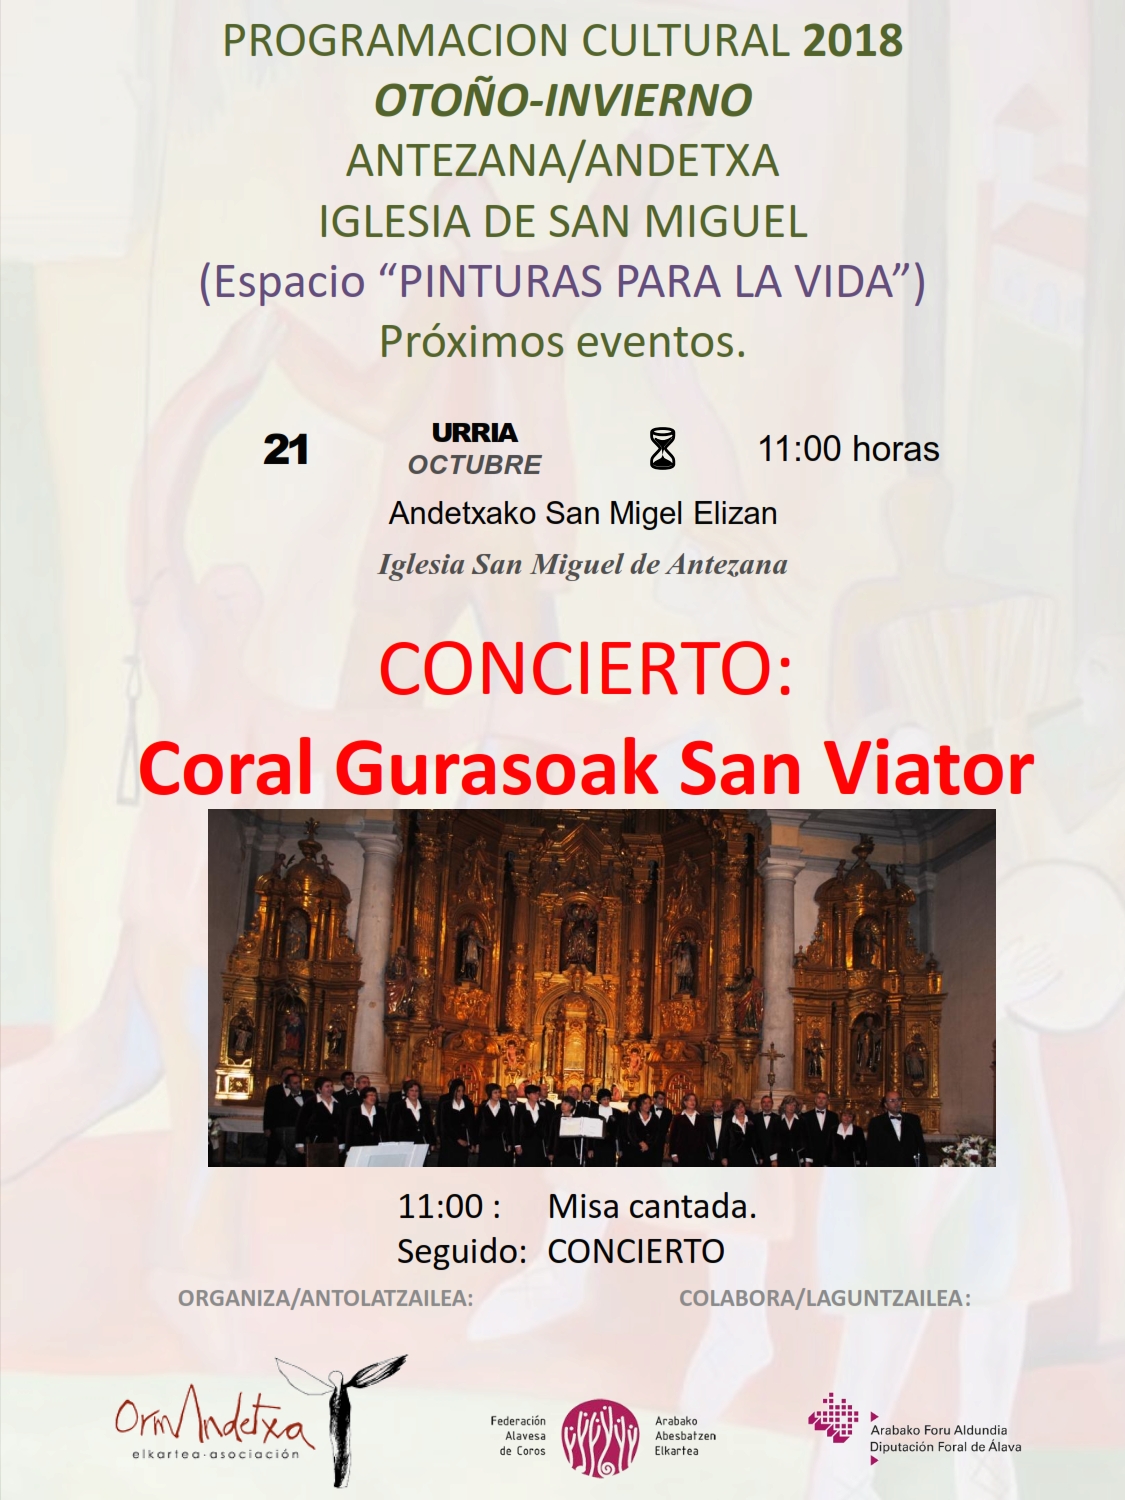 PROGRAMACION CULTURAL 2018, concierto Coral Gurasoak San Viator, el proximo domingo 21, a las 11:00h Iglesia San Miguel de Antezana